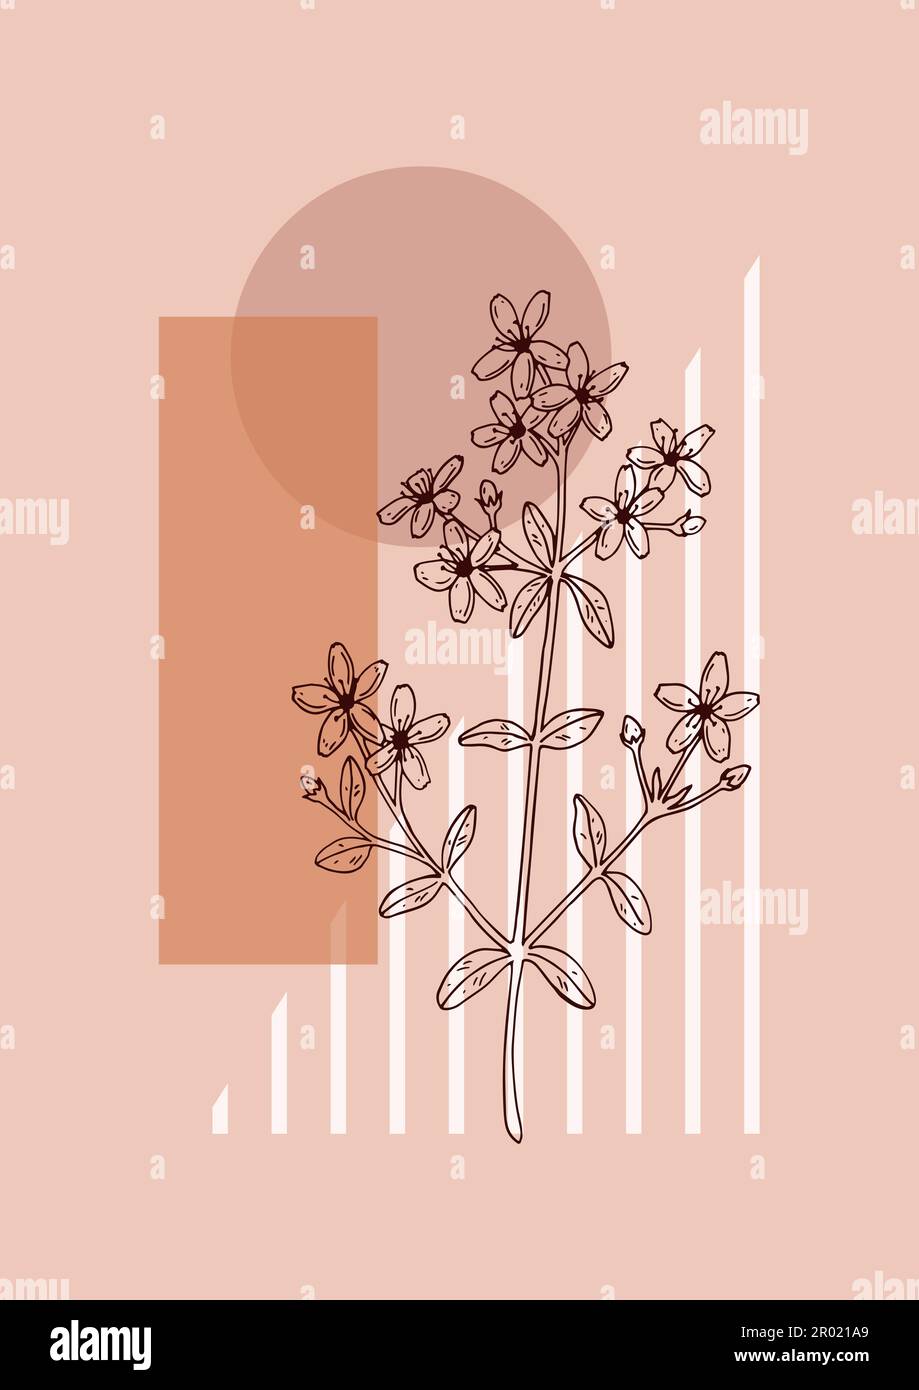 Affiche moderne à motif floral et esthétique. Illustration vectorielle dessinée à la main. Esquisse de fleurs sauvages Illustration de Vecteur